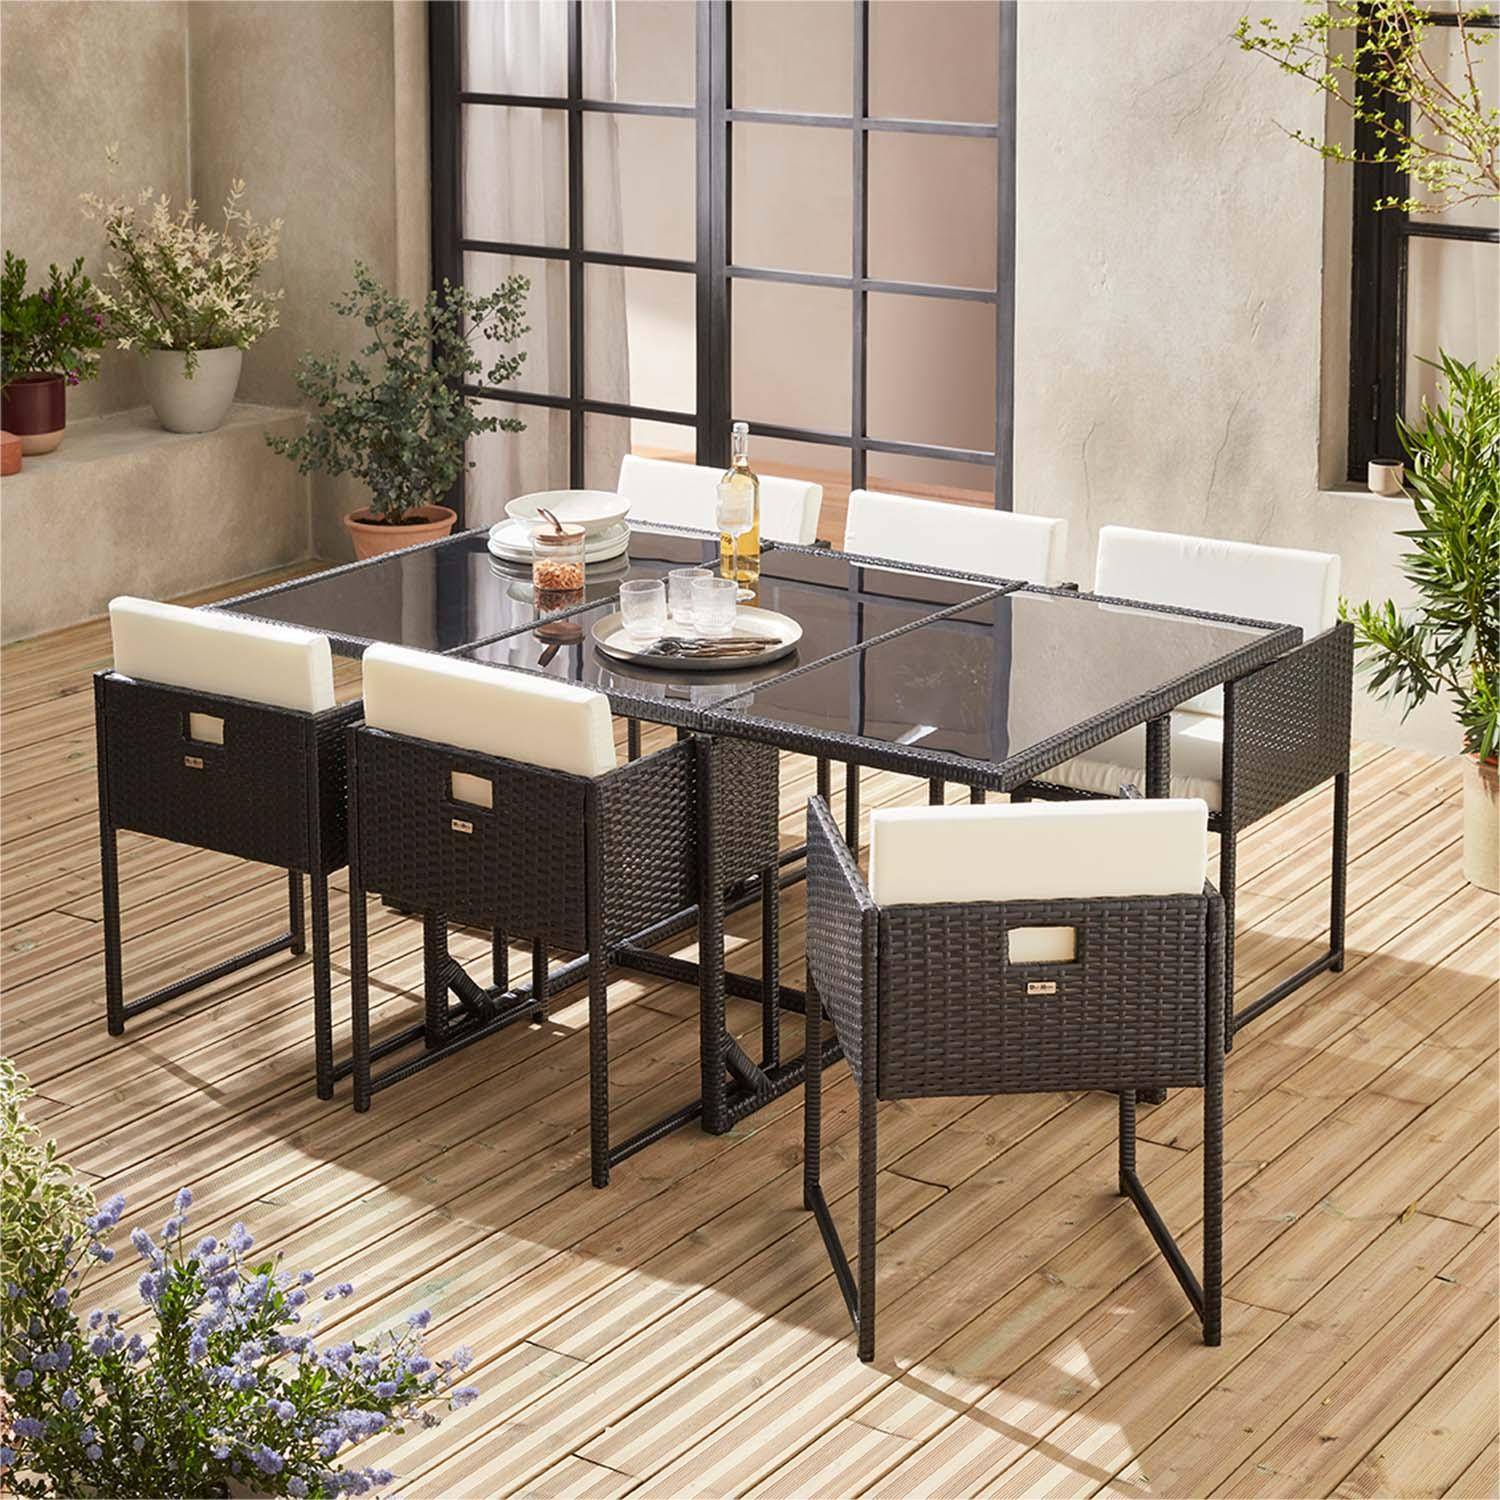 Table de jardin en résine 6 places – FIRENZE 6 – coloris noir, coussins blancs, table encastrable Photo1